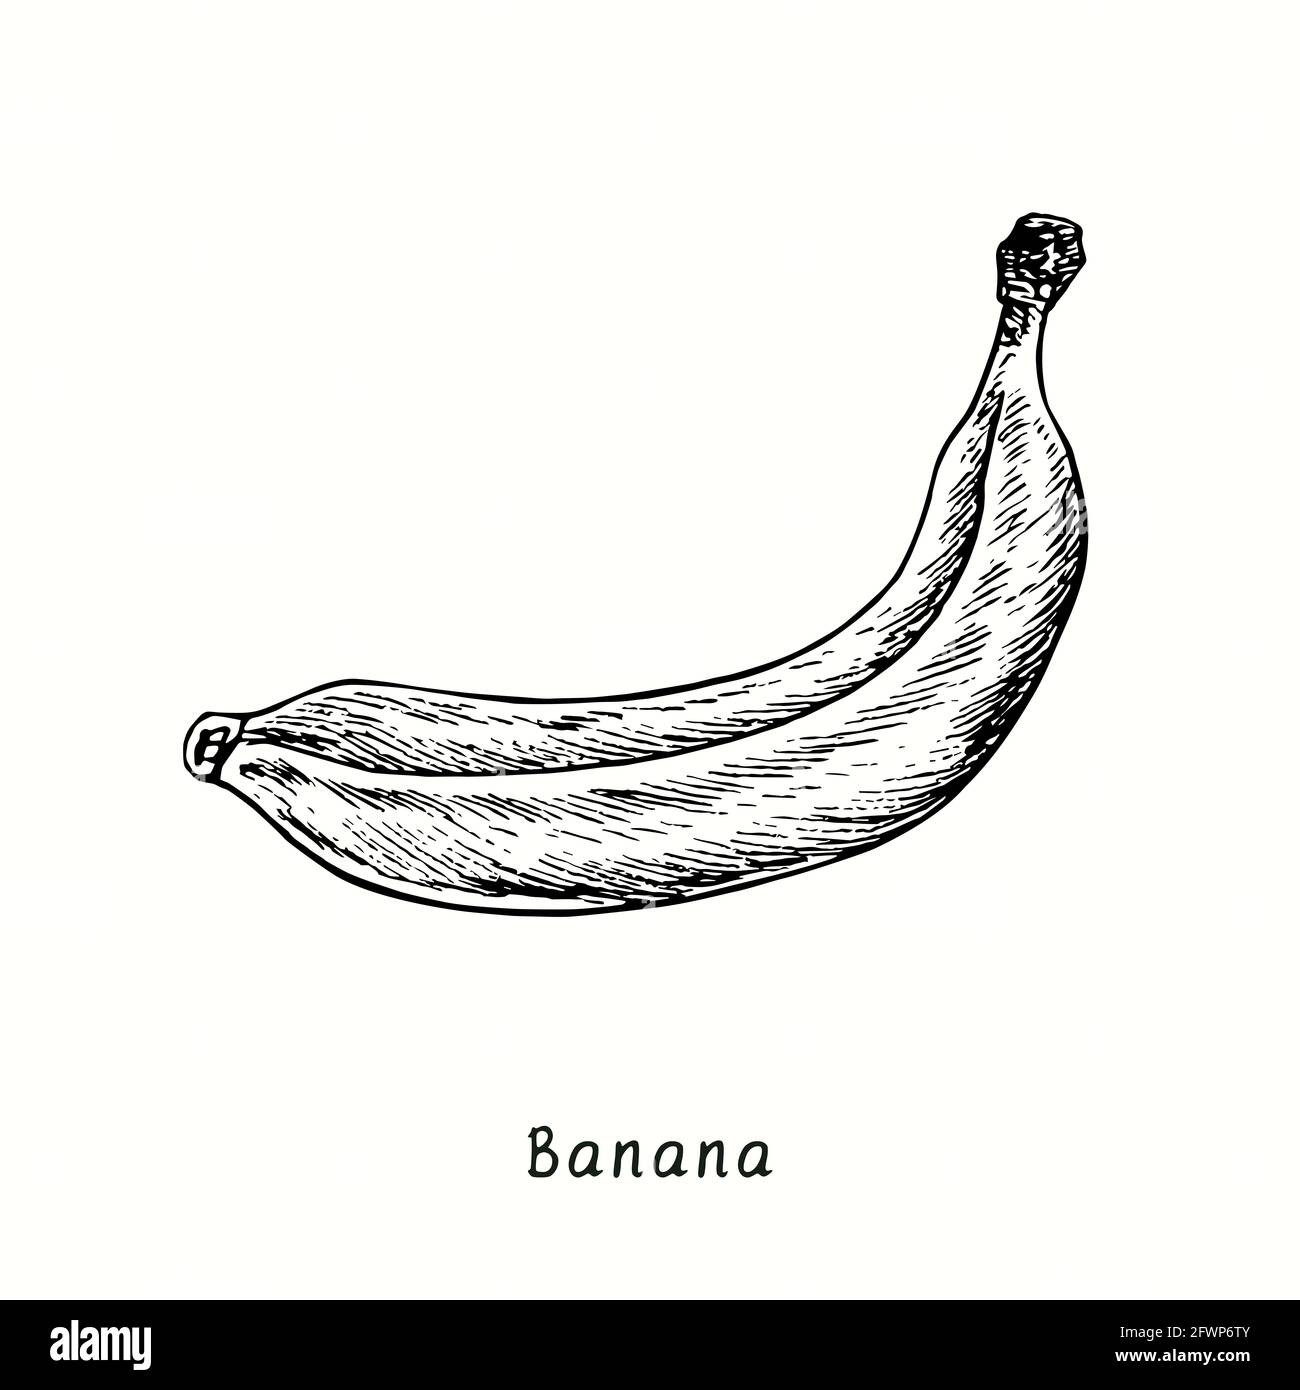 Three Hand Drawn Fresh Bananas | Premium Image